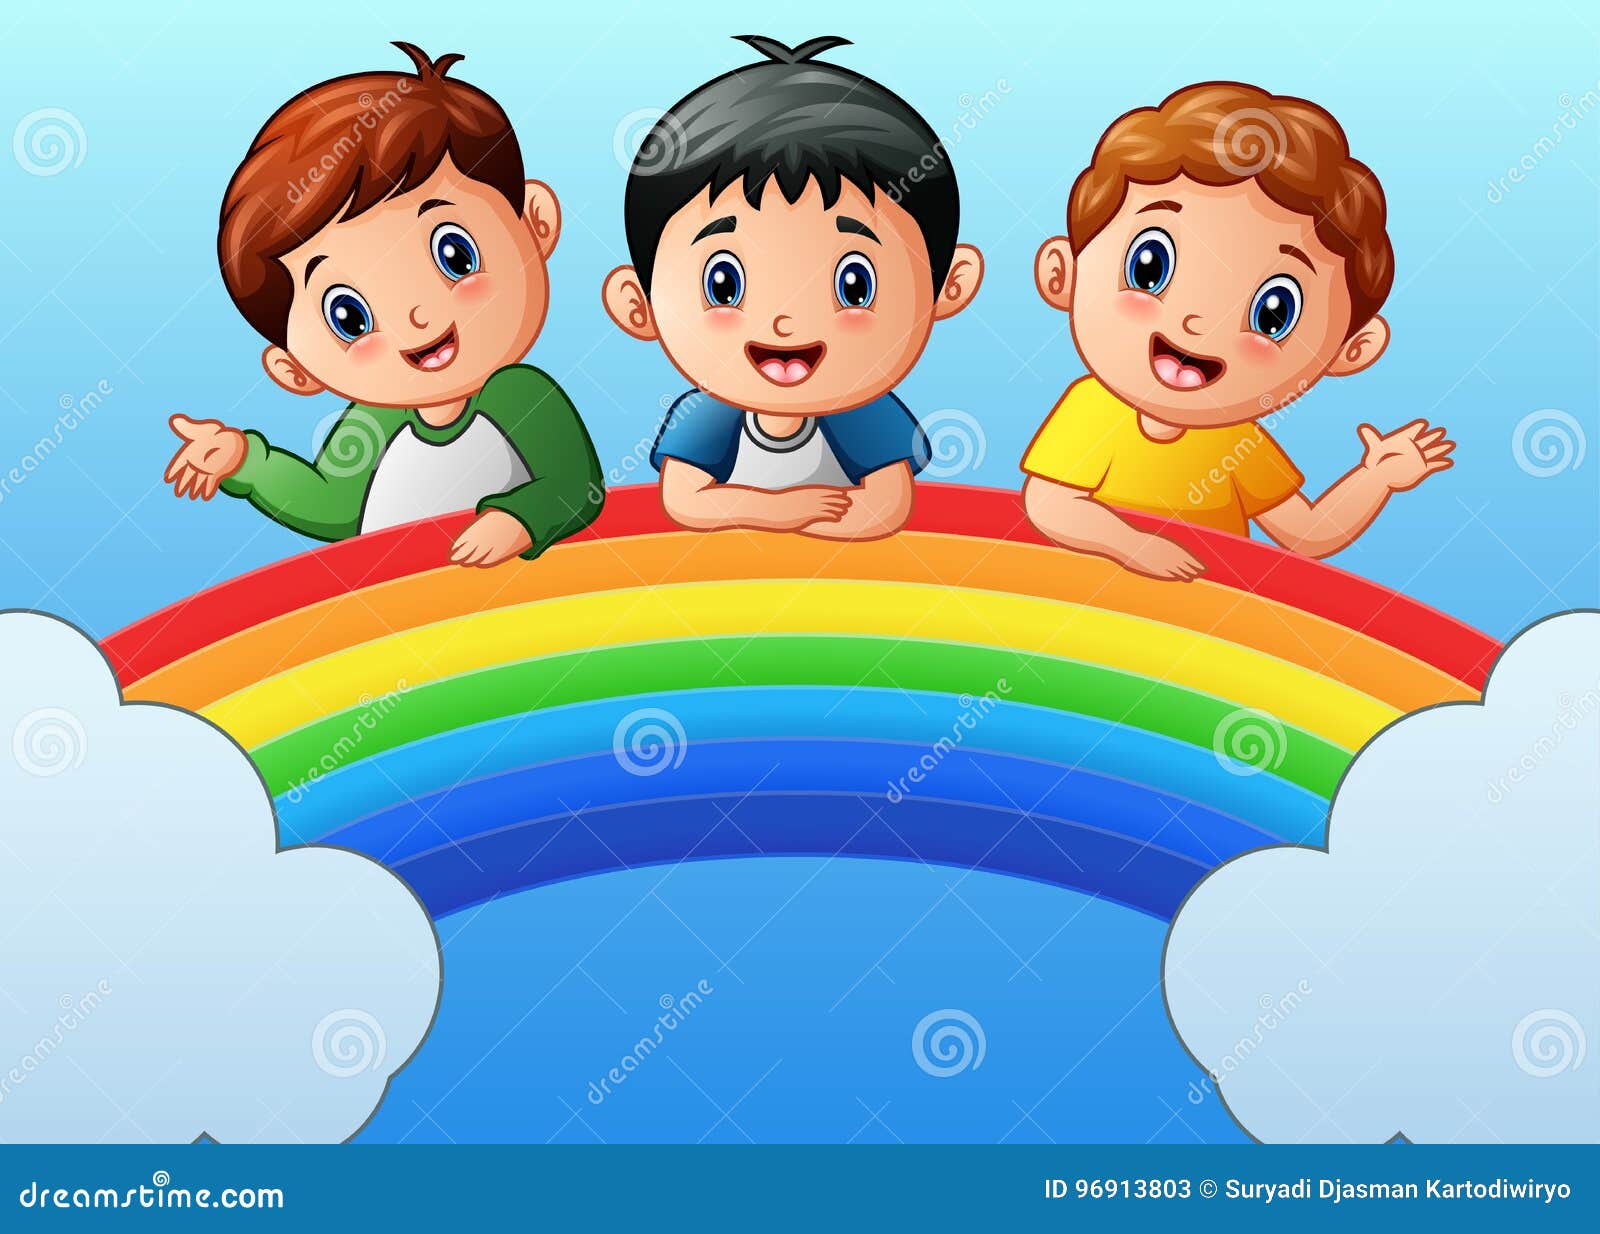 Cartoon Happy Kids on the Rainbow Stock Vector - Illustration of children,  imagination: 96913803